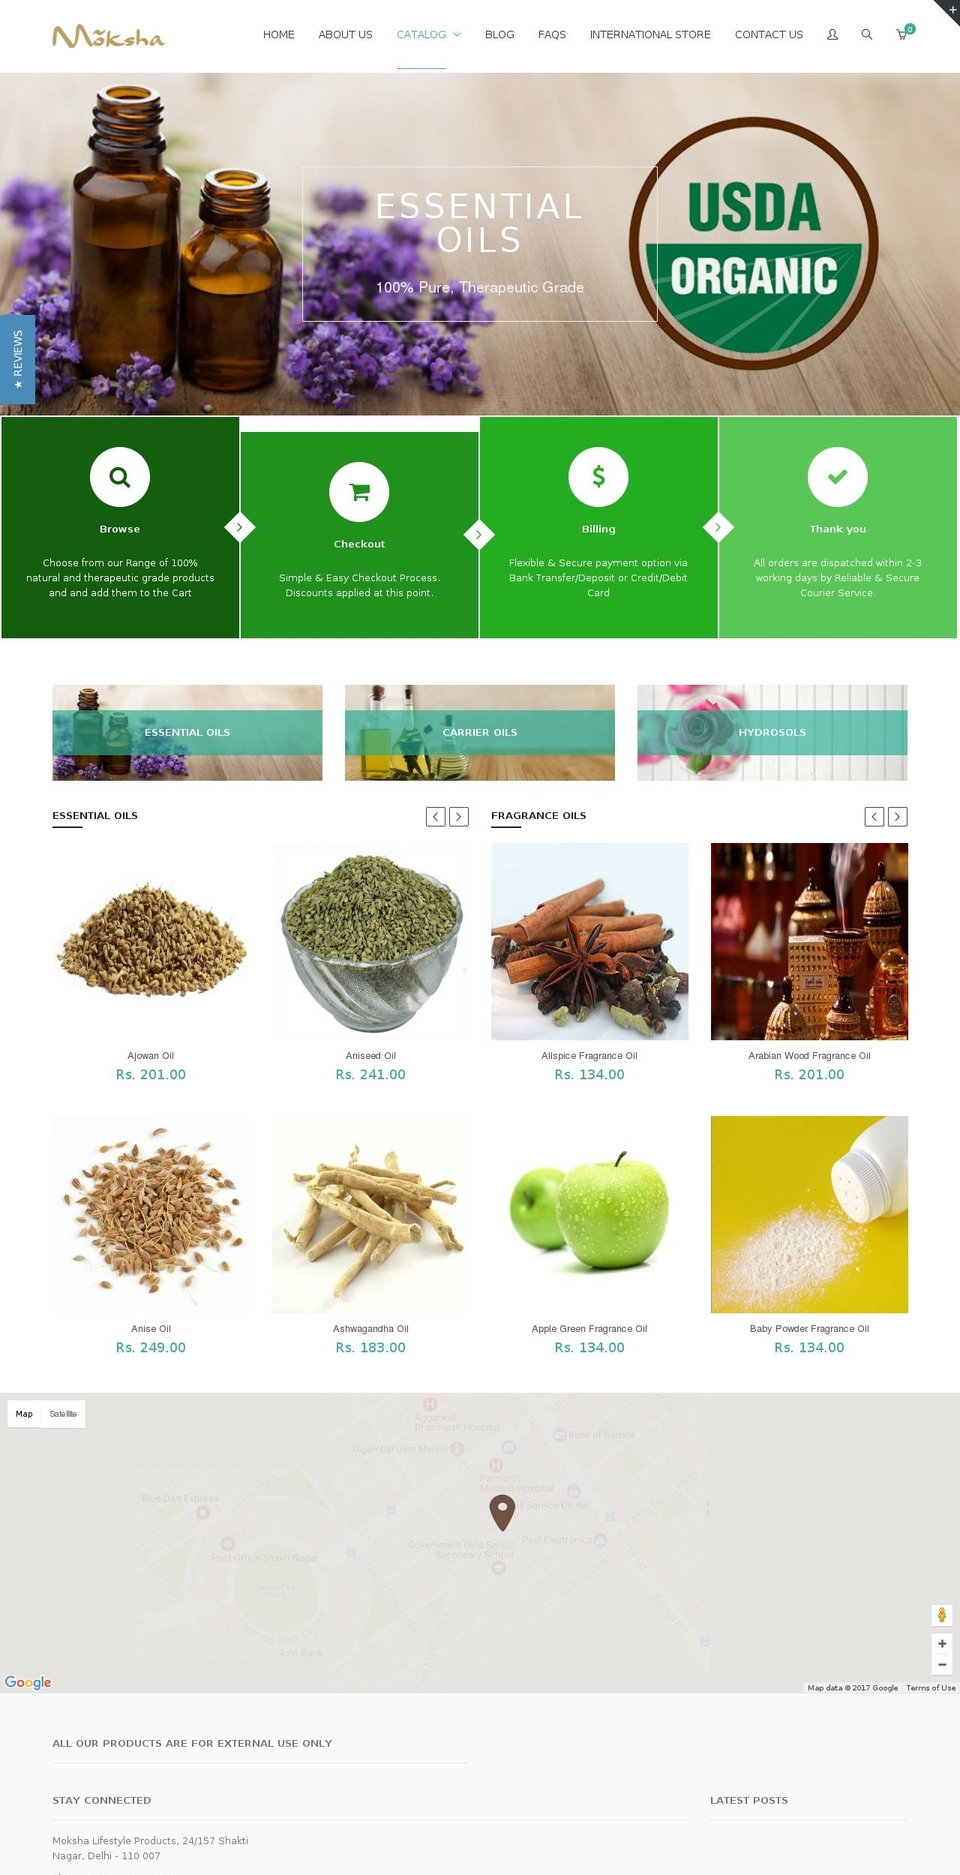 moksha-oils.myshopify.com shopify website screenshot